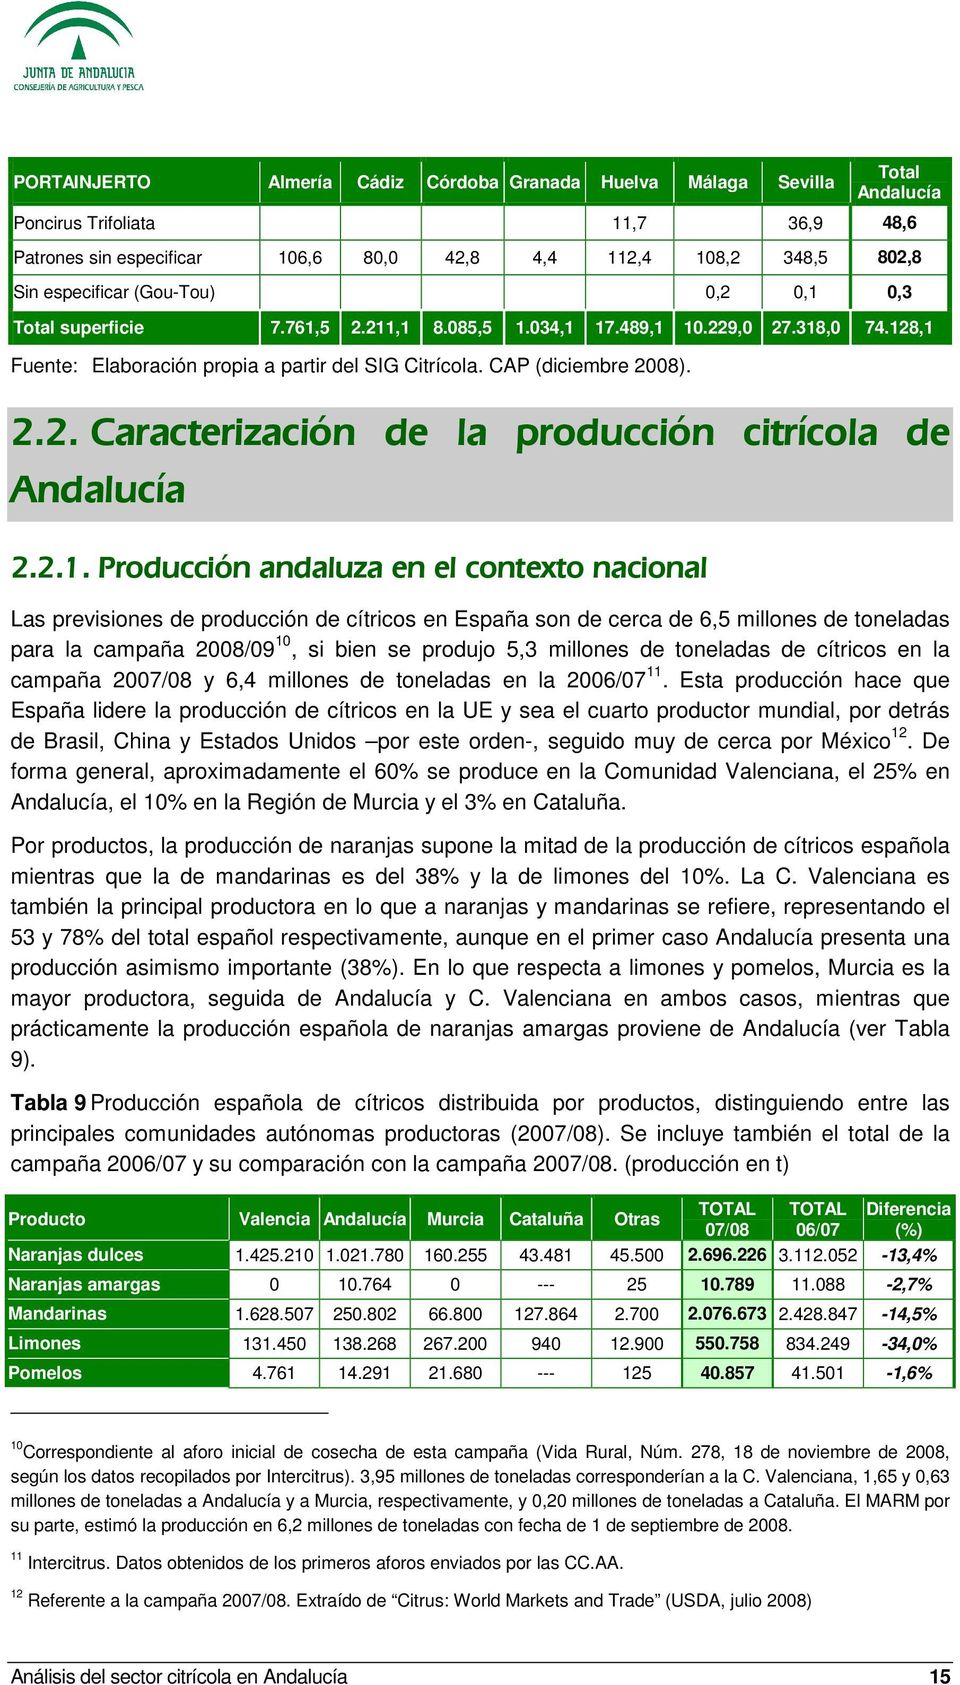 2.1. Producción andaluza en el contexto nacional Las previsiones de producción de cítricos en España son de cerca de 6,5 millones de toneladas para la campaña 2008/09 10, si bien se produjo 5,3